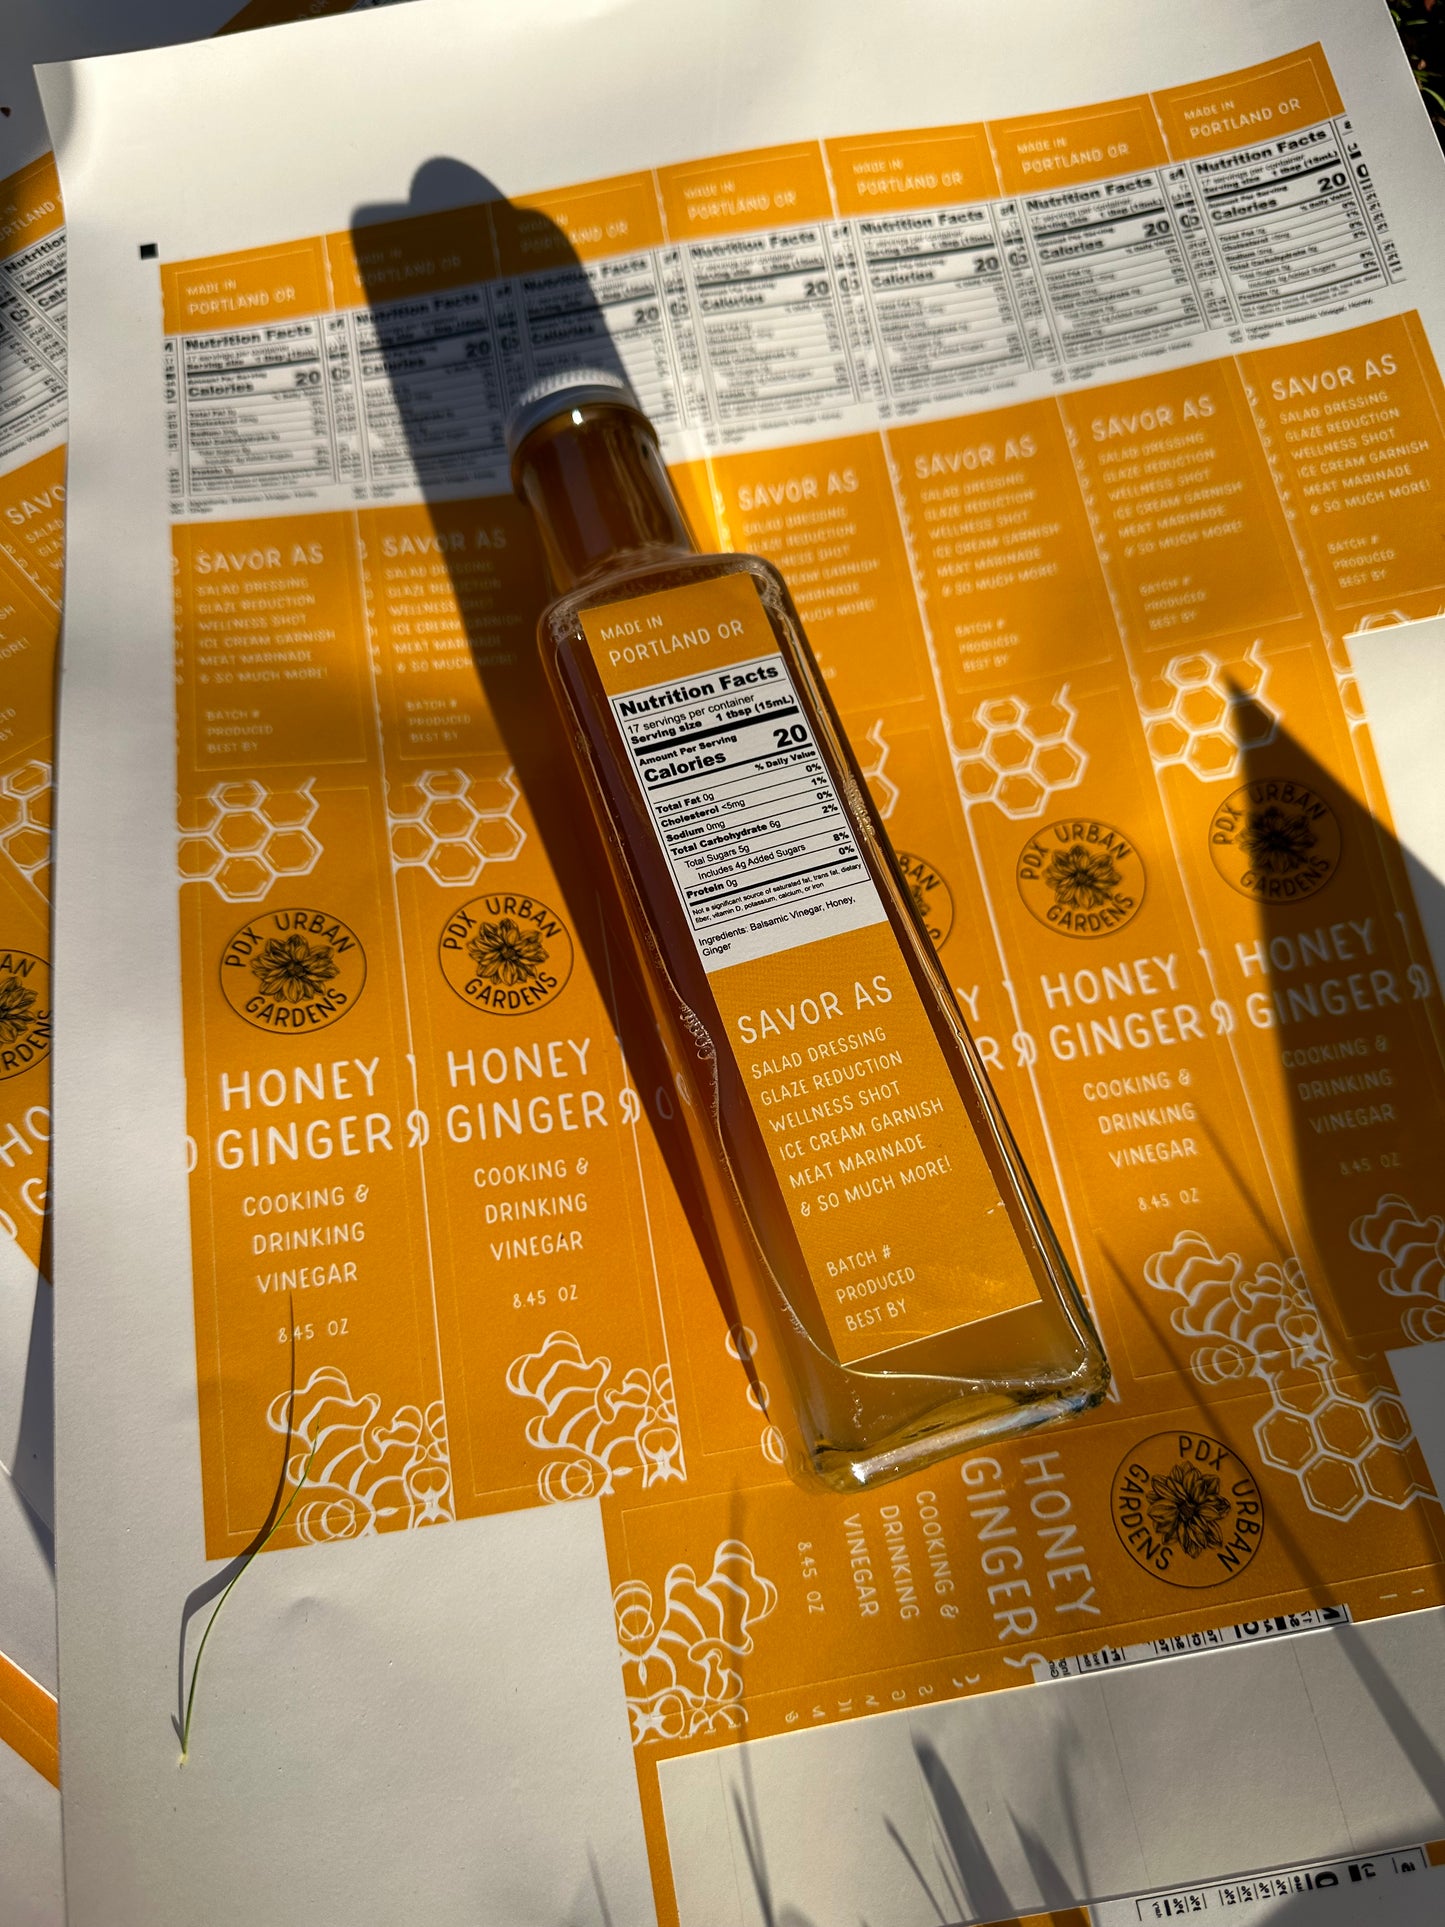 Honey Ginger Cooking & Drinking Vinegar